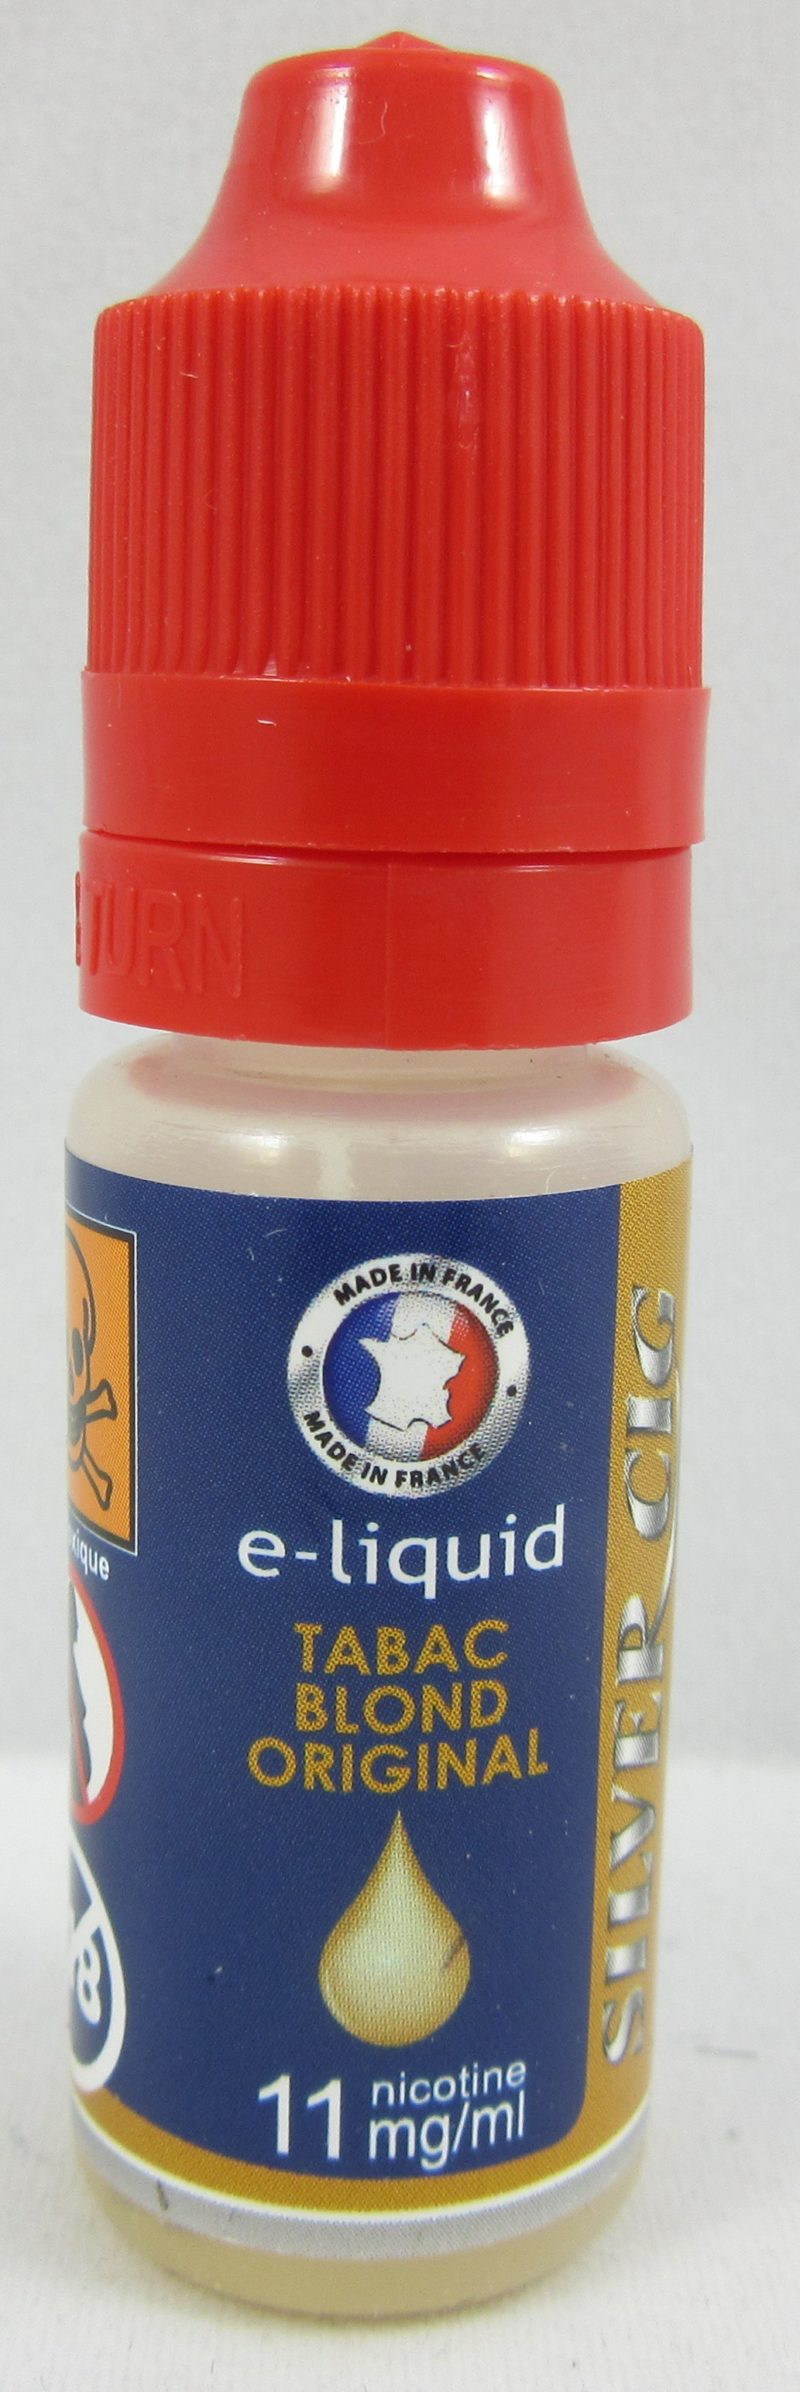 E-liquide silver cig blond original